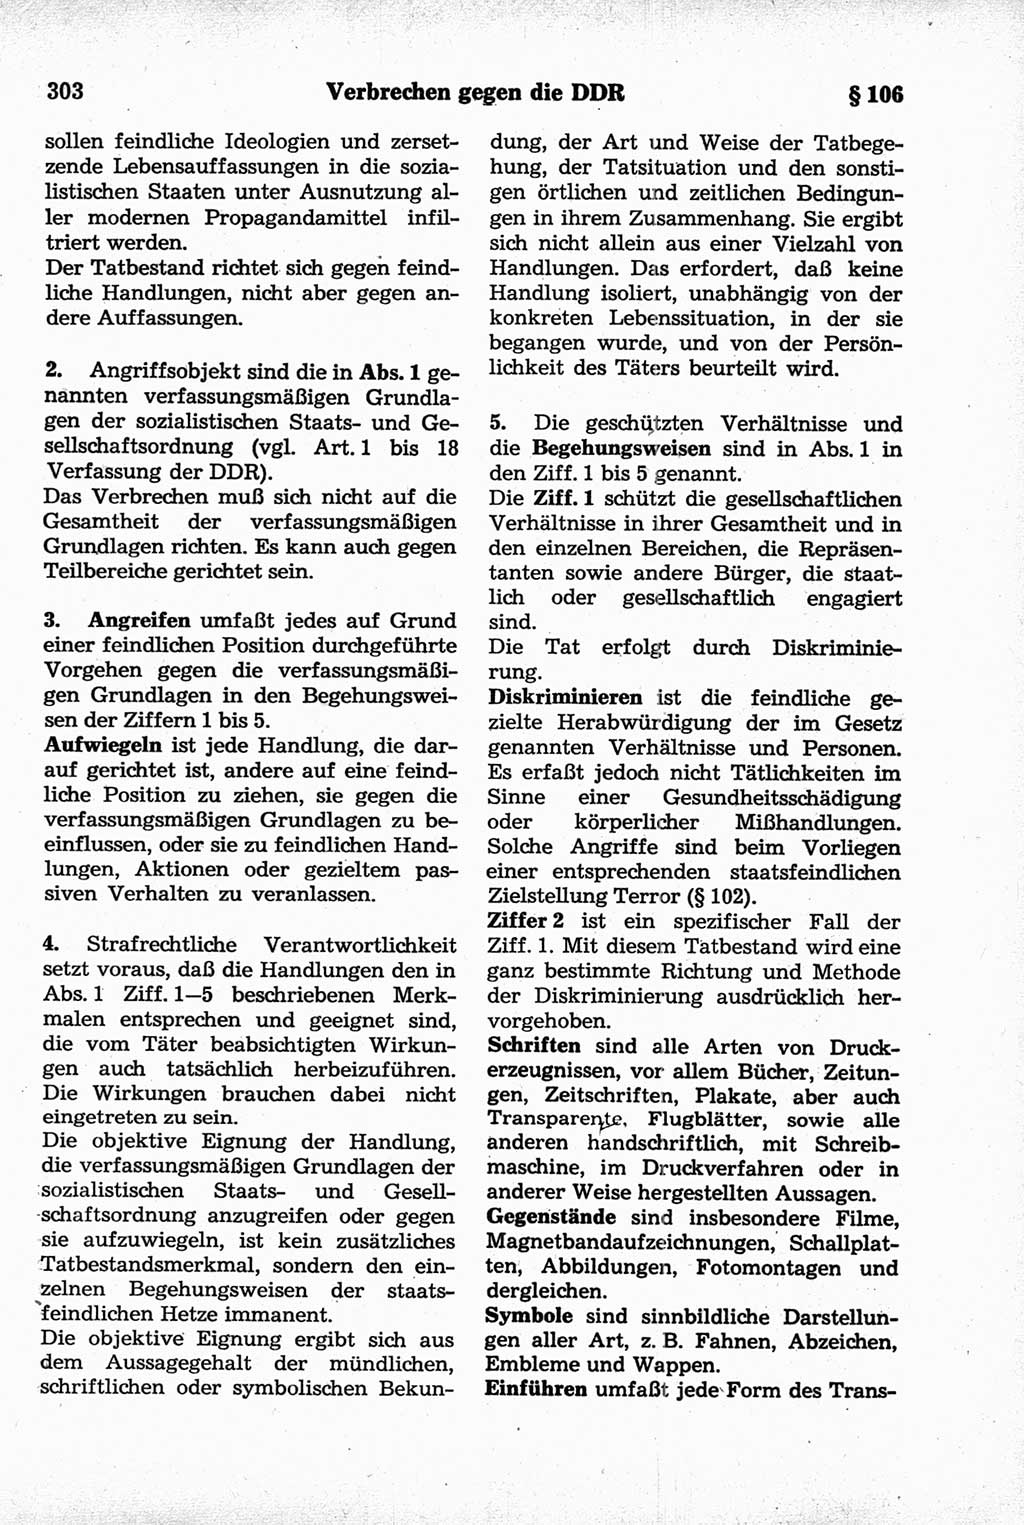 Strafrecht der Deutschen Demokratischen Republik (DDR), Kommentar zum Strafgesetzbuch (StGB) 1981, Seite 303 (Strafr. DDR Komm. StGB 1981, S. 303)